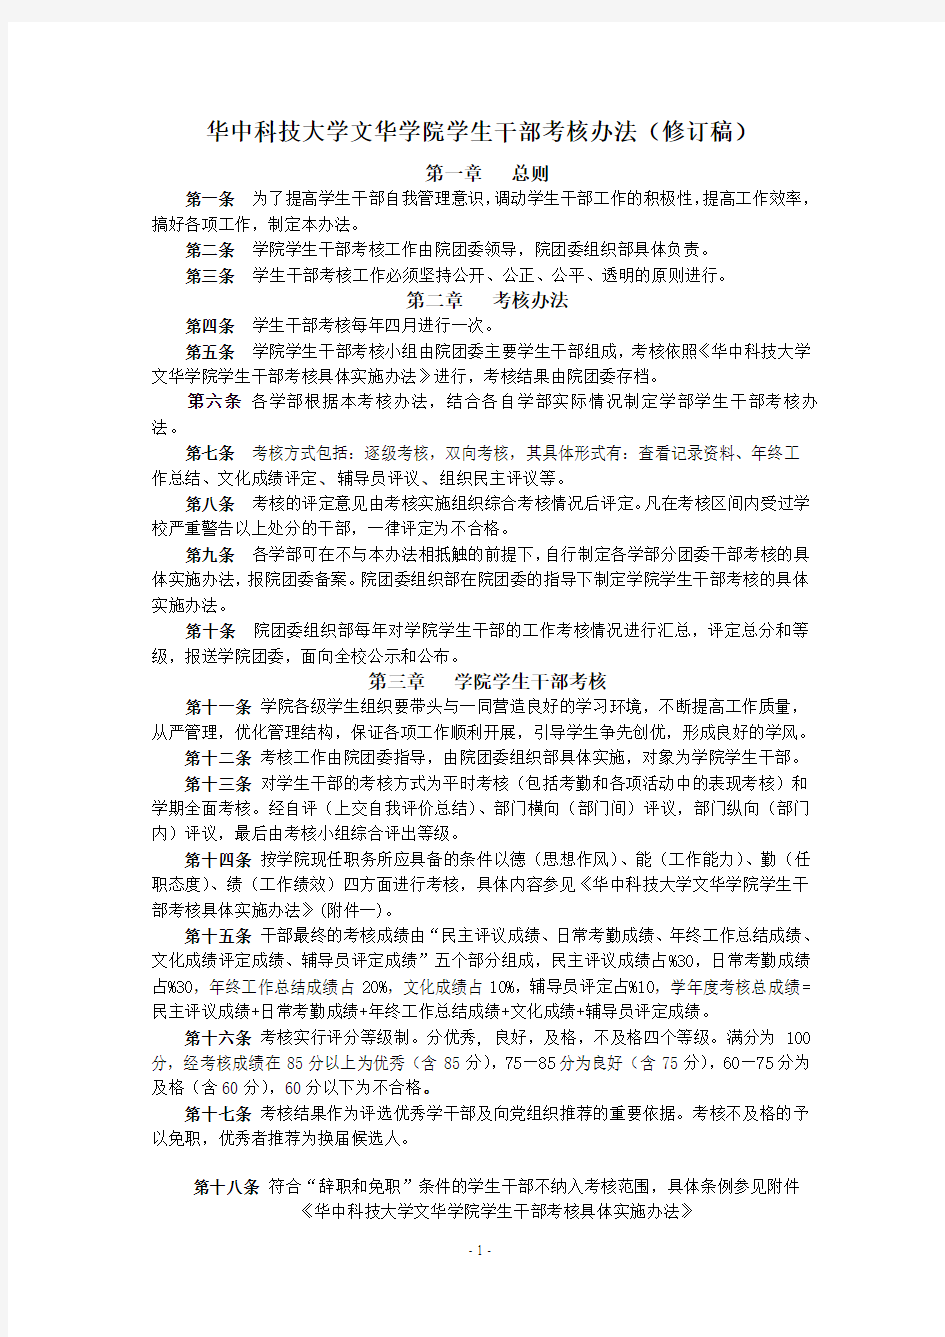 华中科技大学文华学院学生干部考核办法(修订稿)